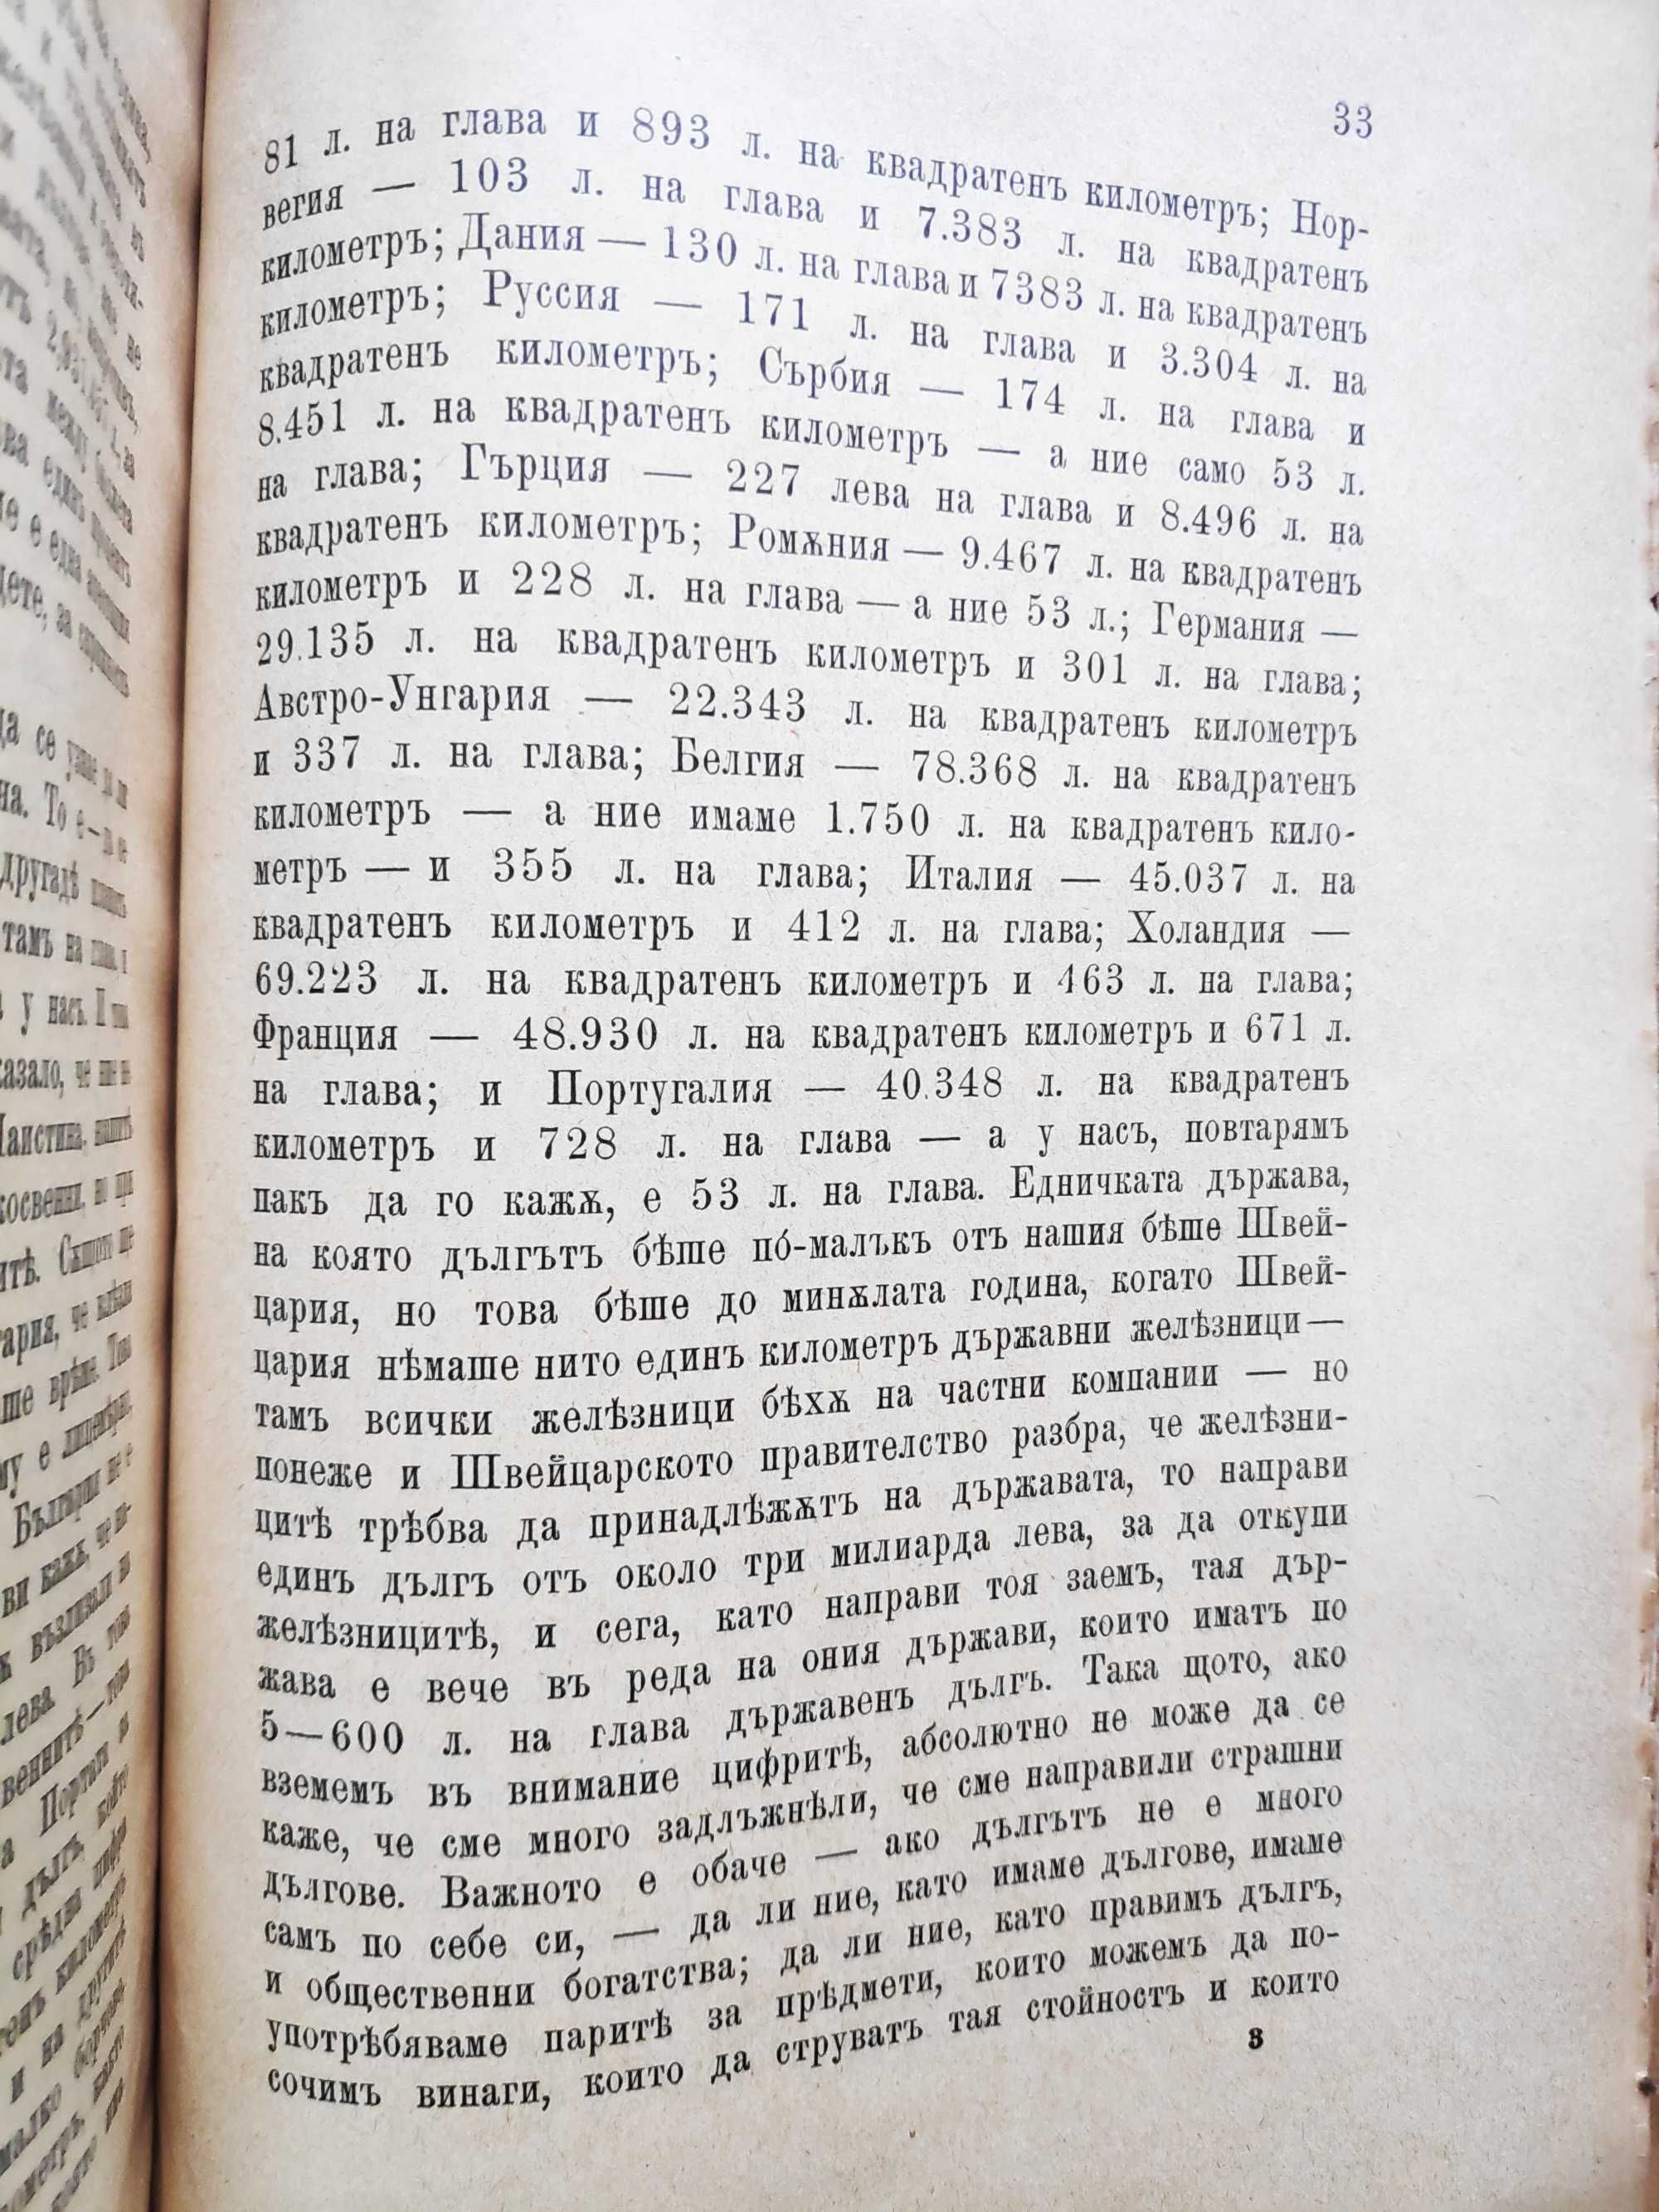 1899 Реч на министъра на финансите Т. Теодоров